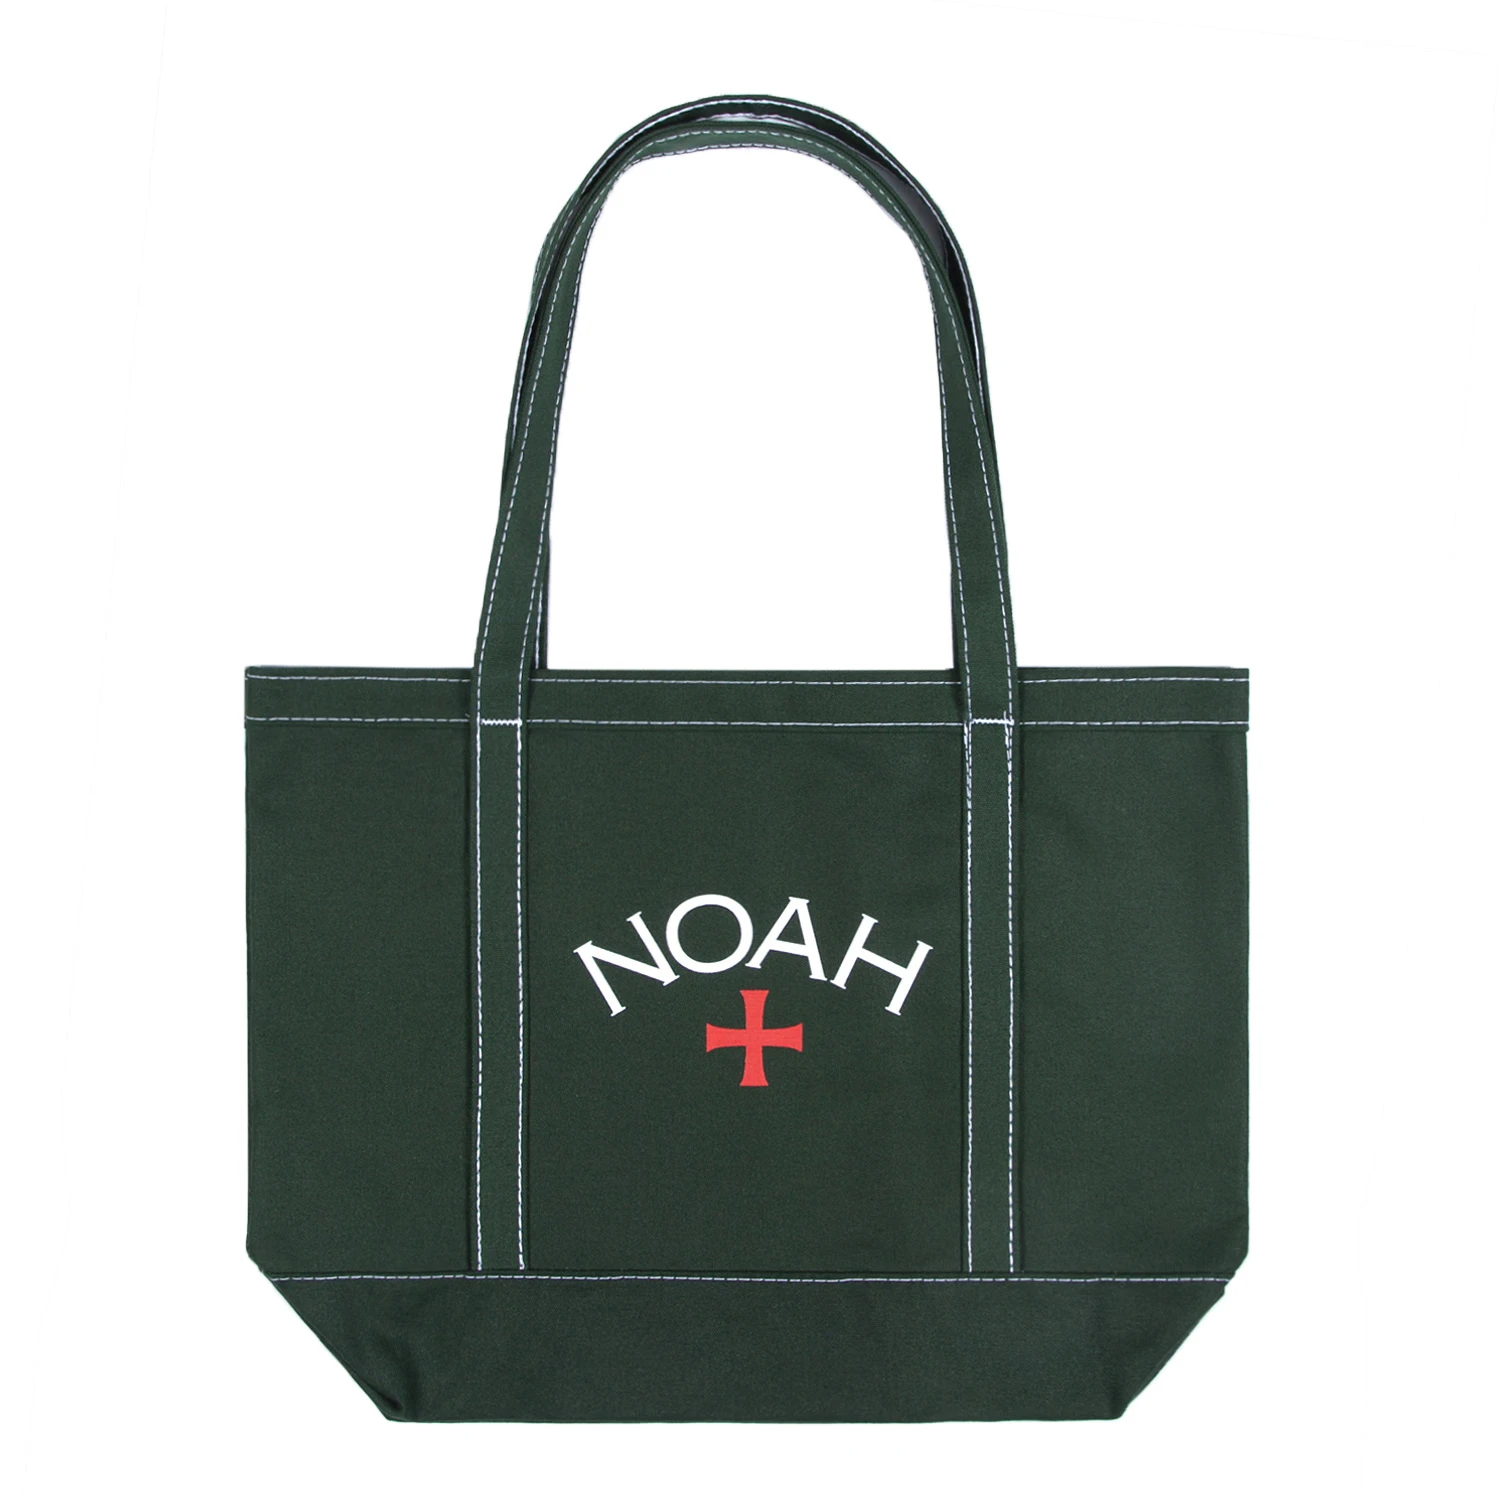 Noah + Contrast Stitch Tote